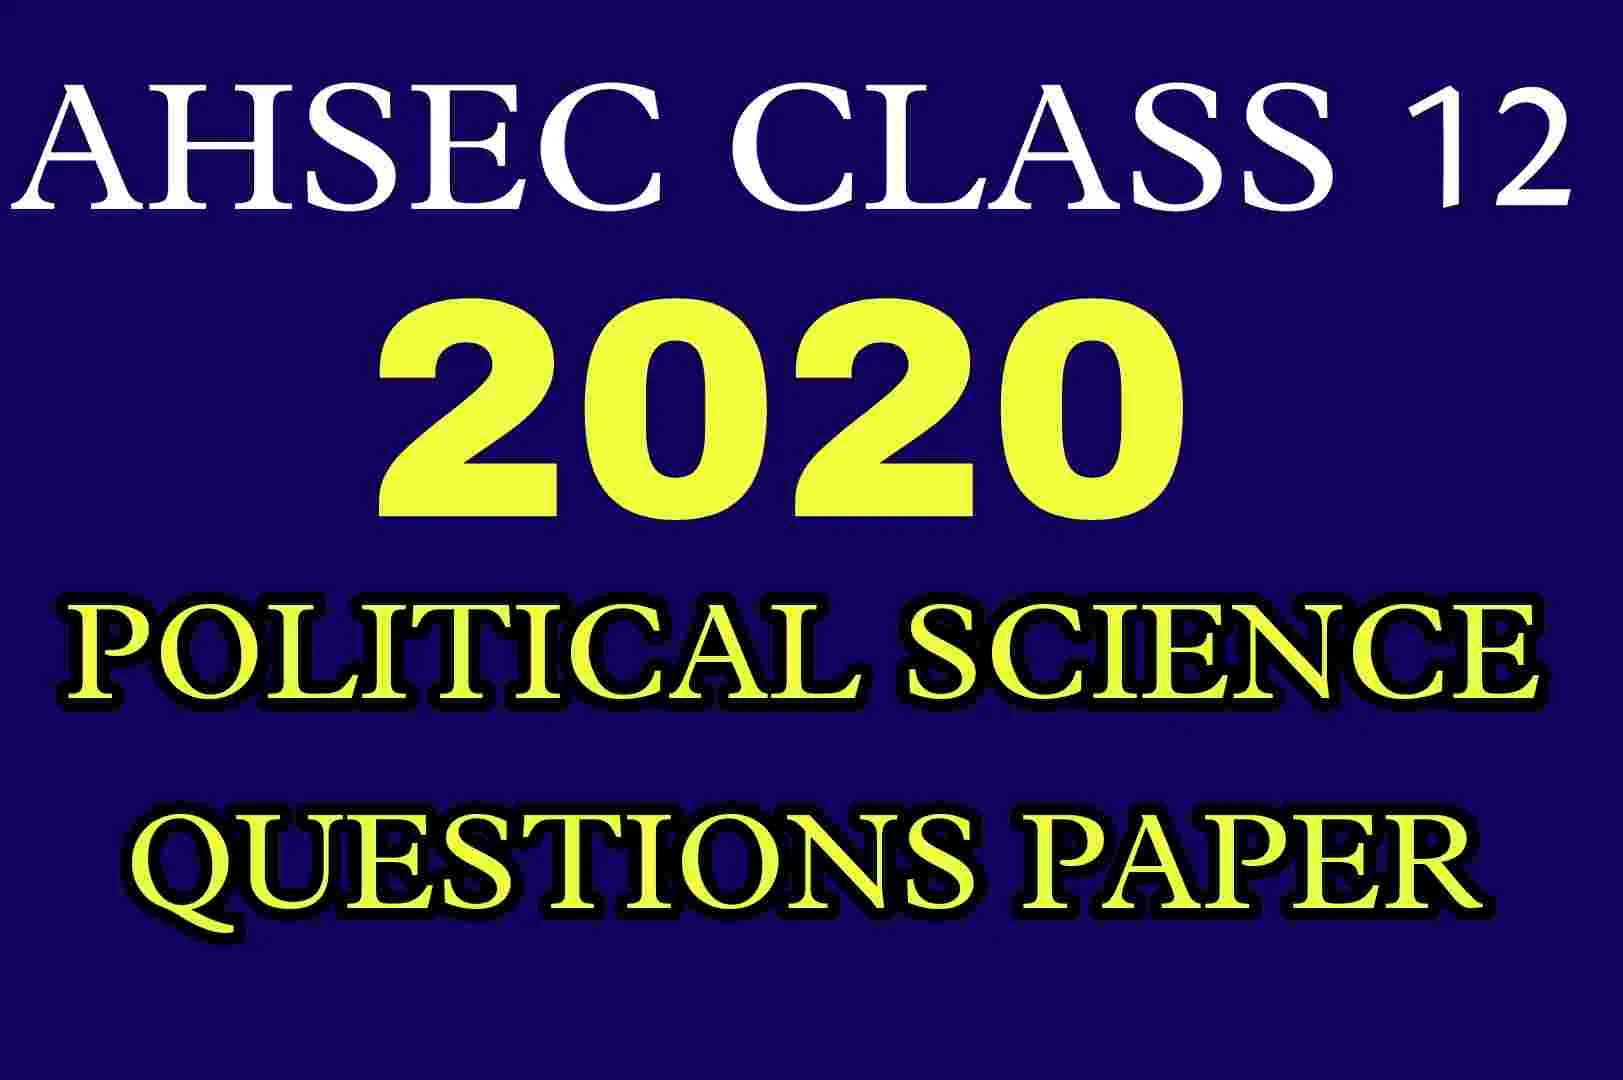 AHSEC Class 12 Political Science Questions Paper 2020 | HS 2nd Year Political Science 2020 Questions Paper